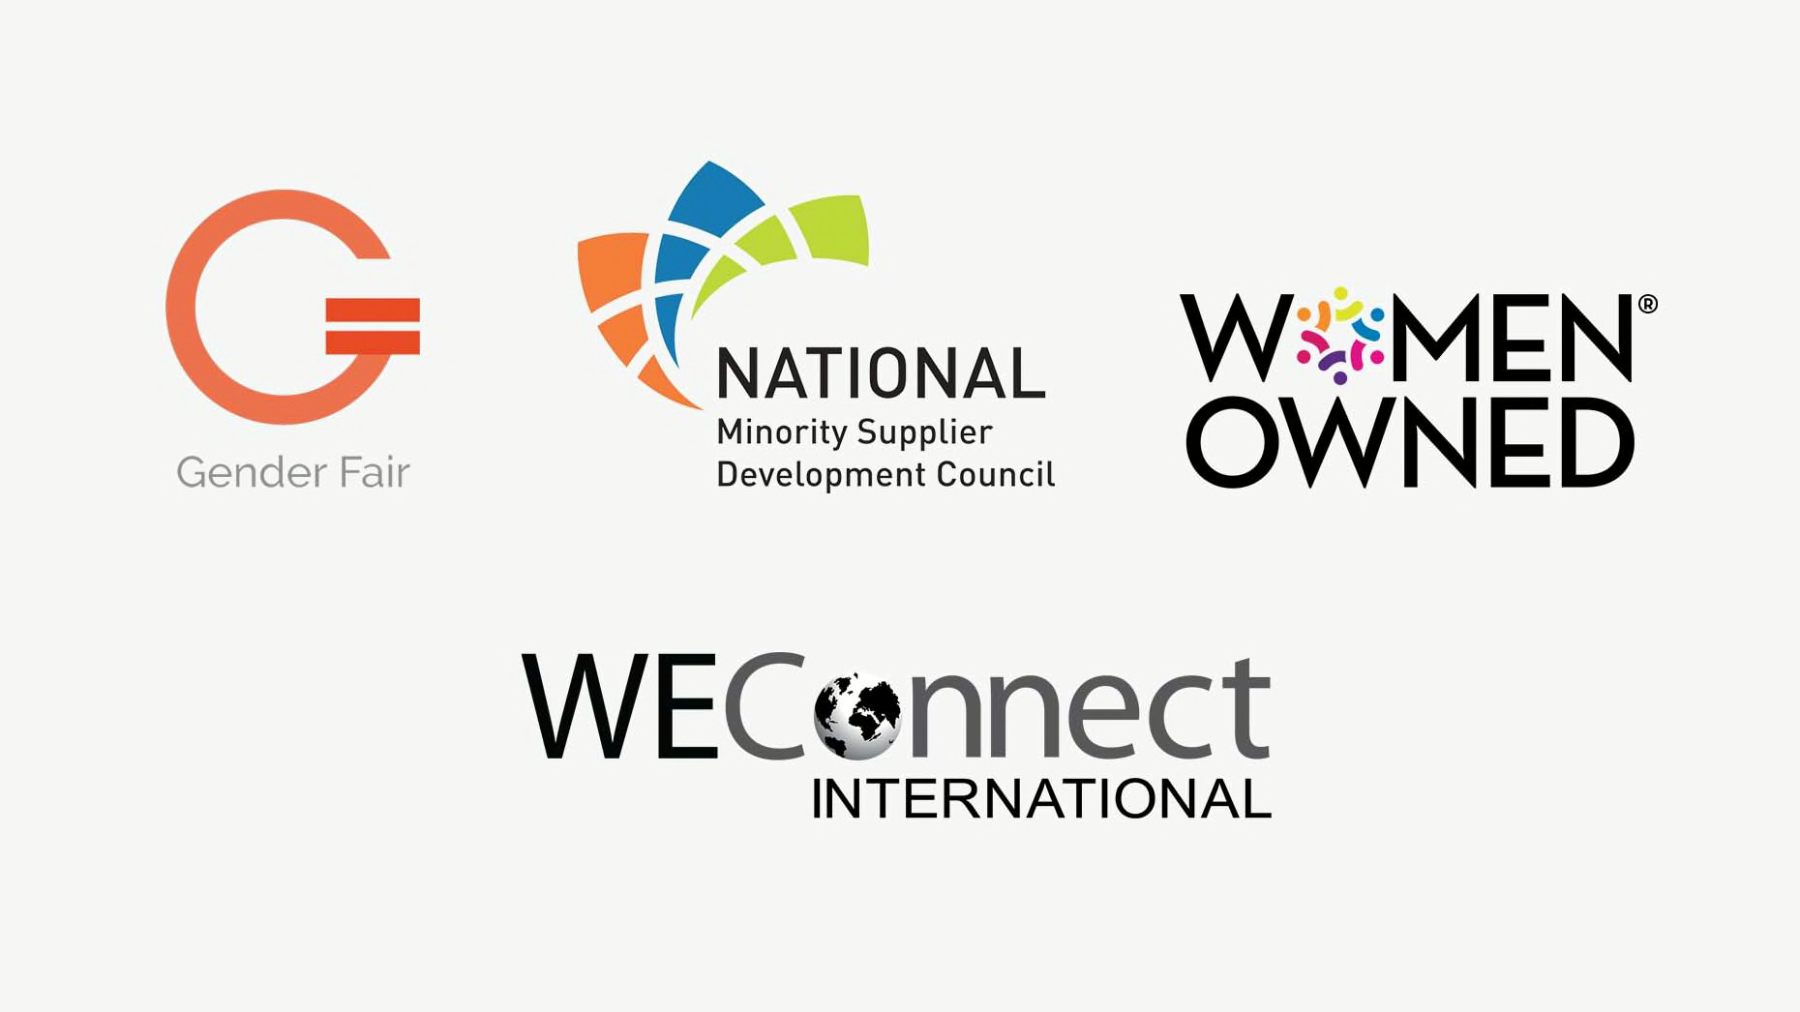 Logos d’entreprise de diversité des fournisseurs et d’approvisionnement équitable entre les sexes